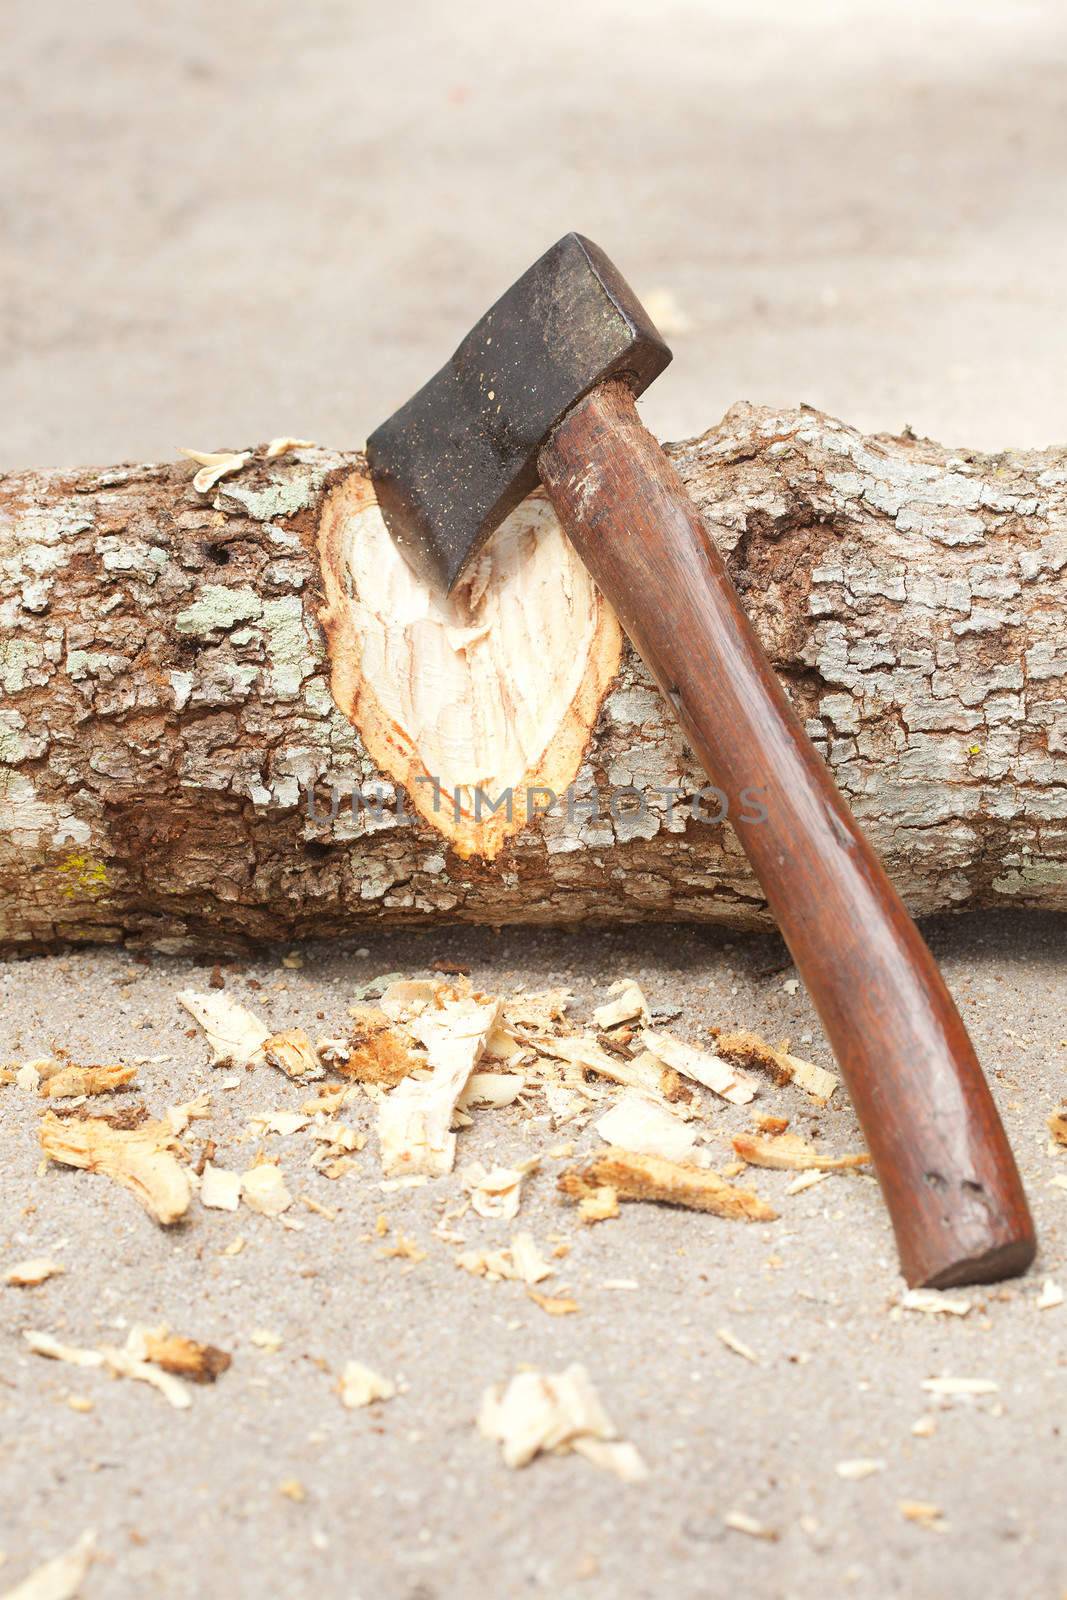 An ax chopping wood